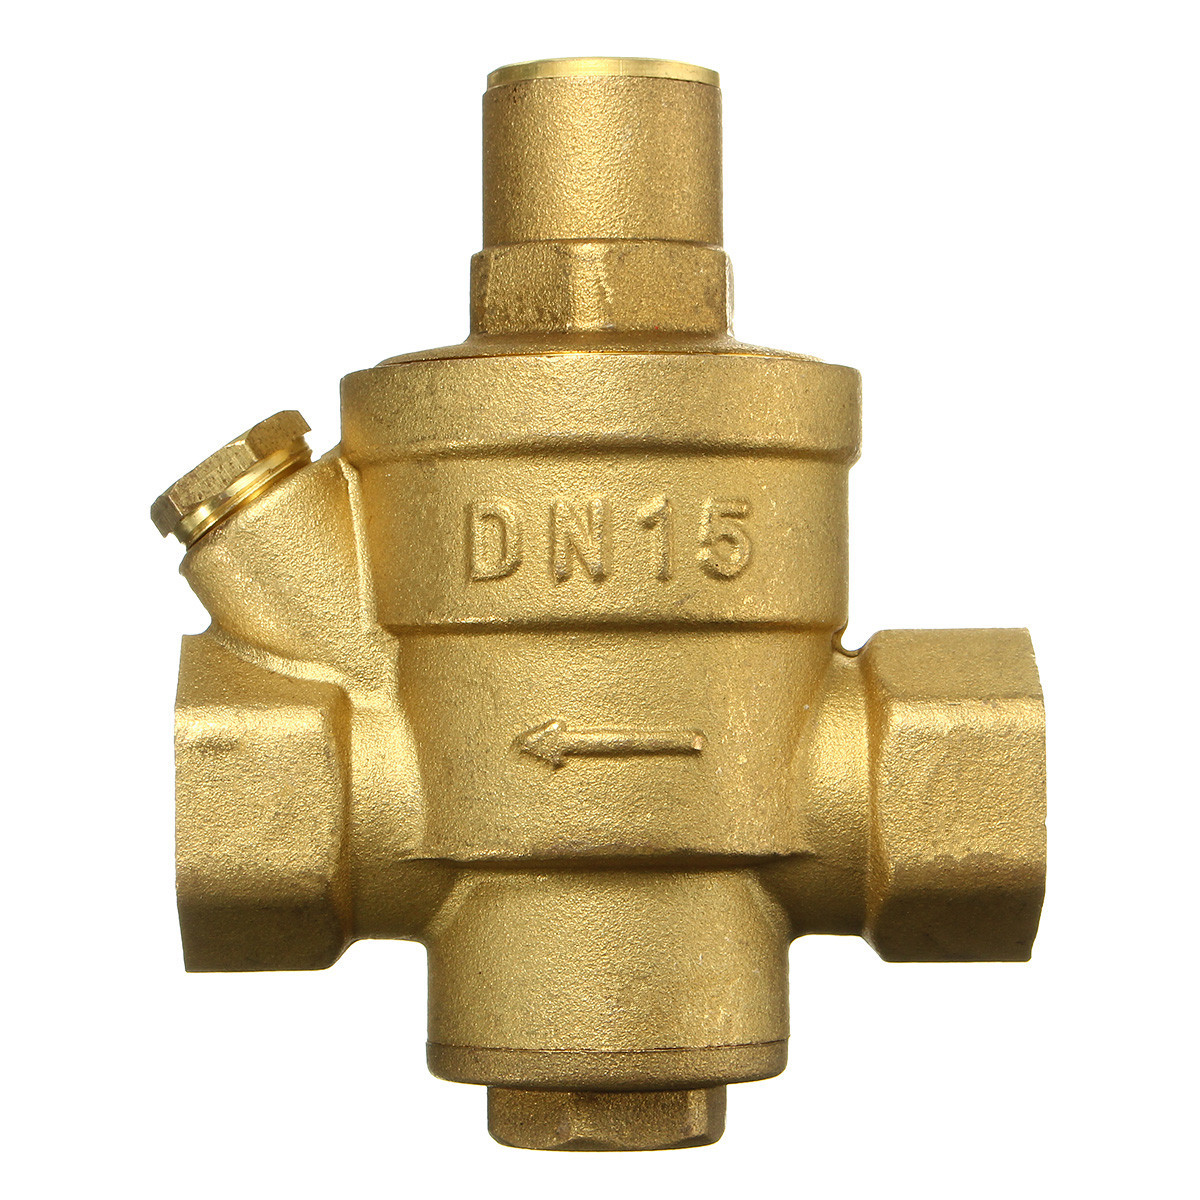 Adjustable-DN15-Bspp-Brass-Water-Pressure-Reducing-Valve-with-Gauge-Flow-1104771-6